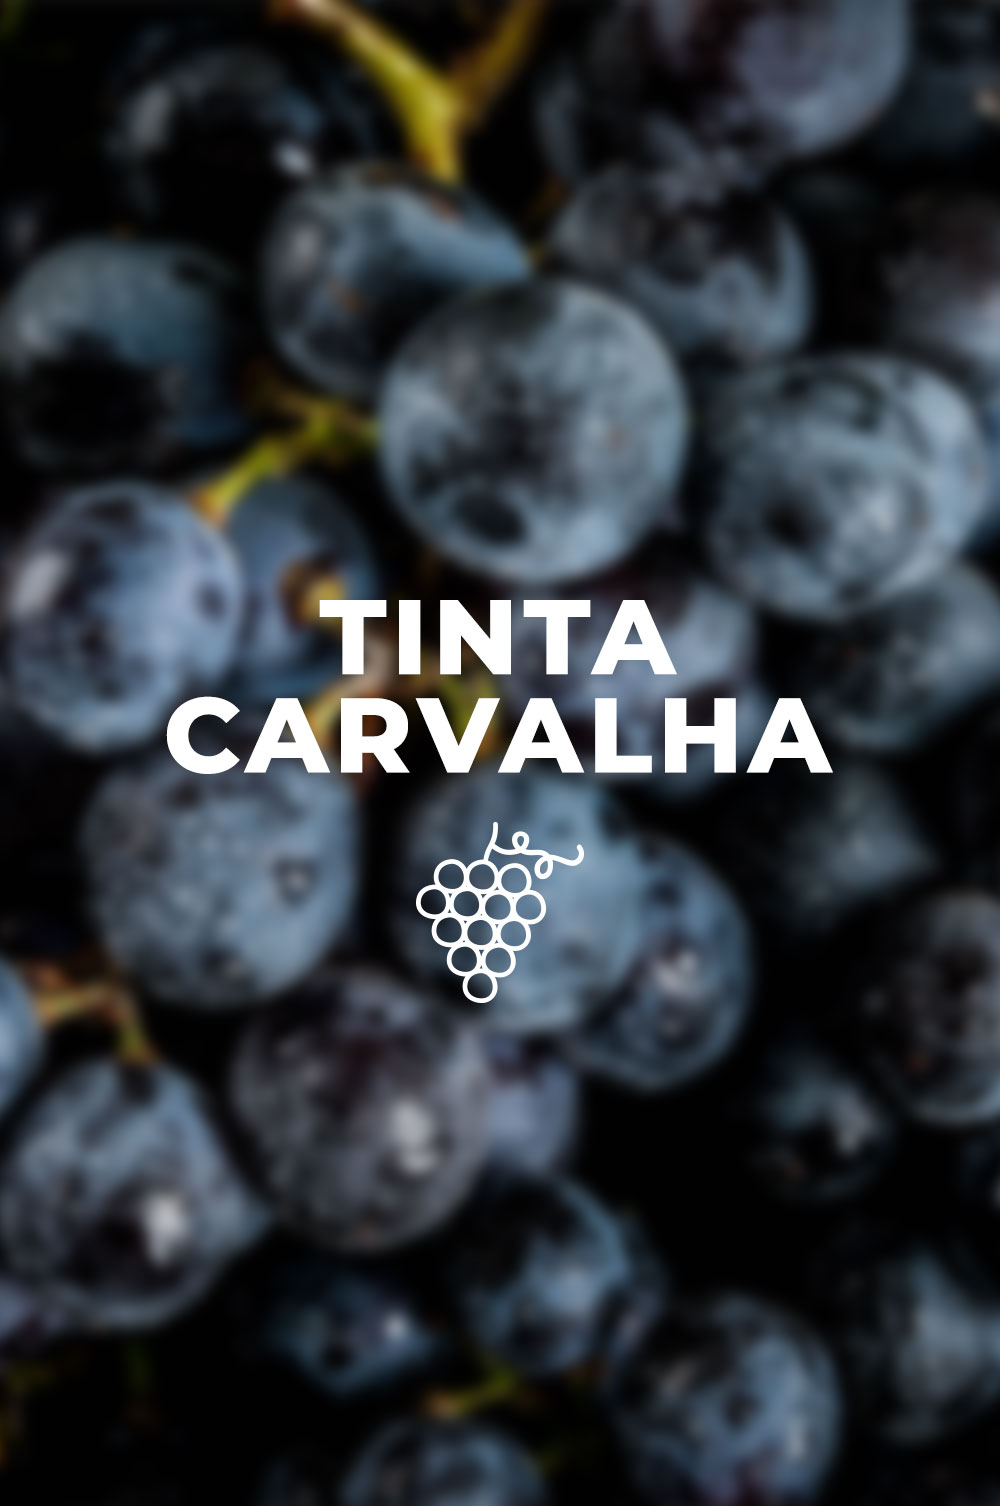 Un toast à la Tinta Carvalha, avec un vin d’António Maçanita!